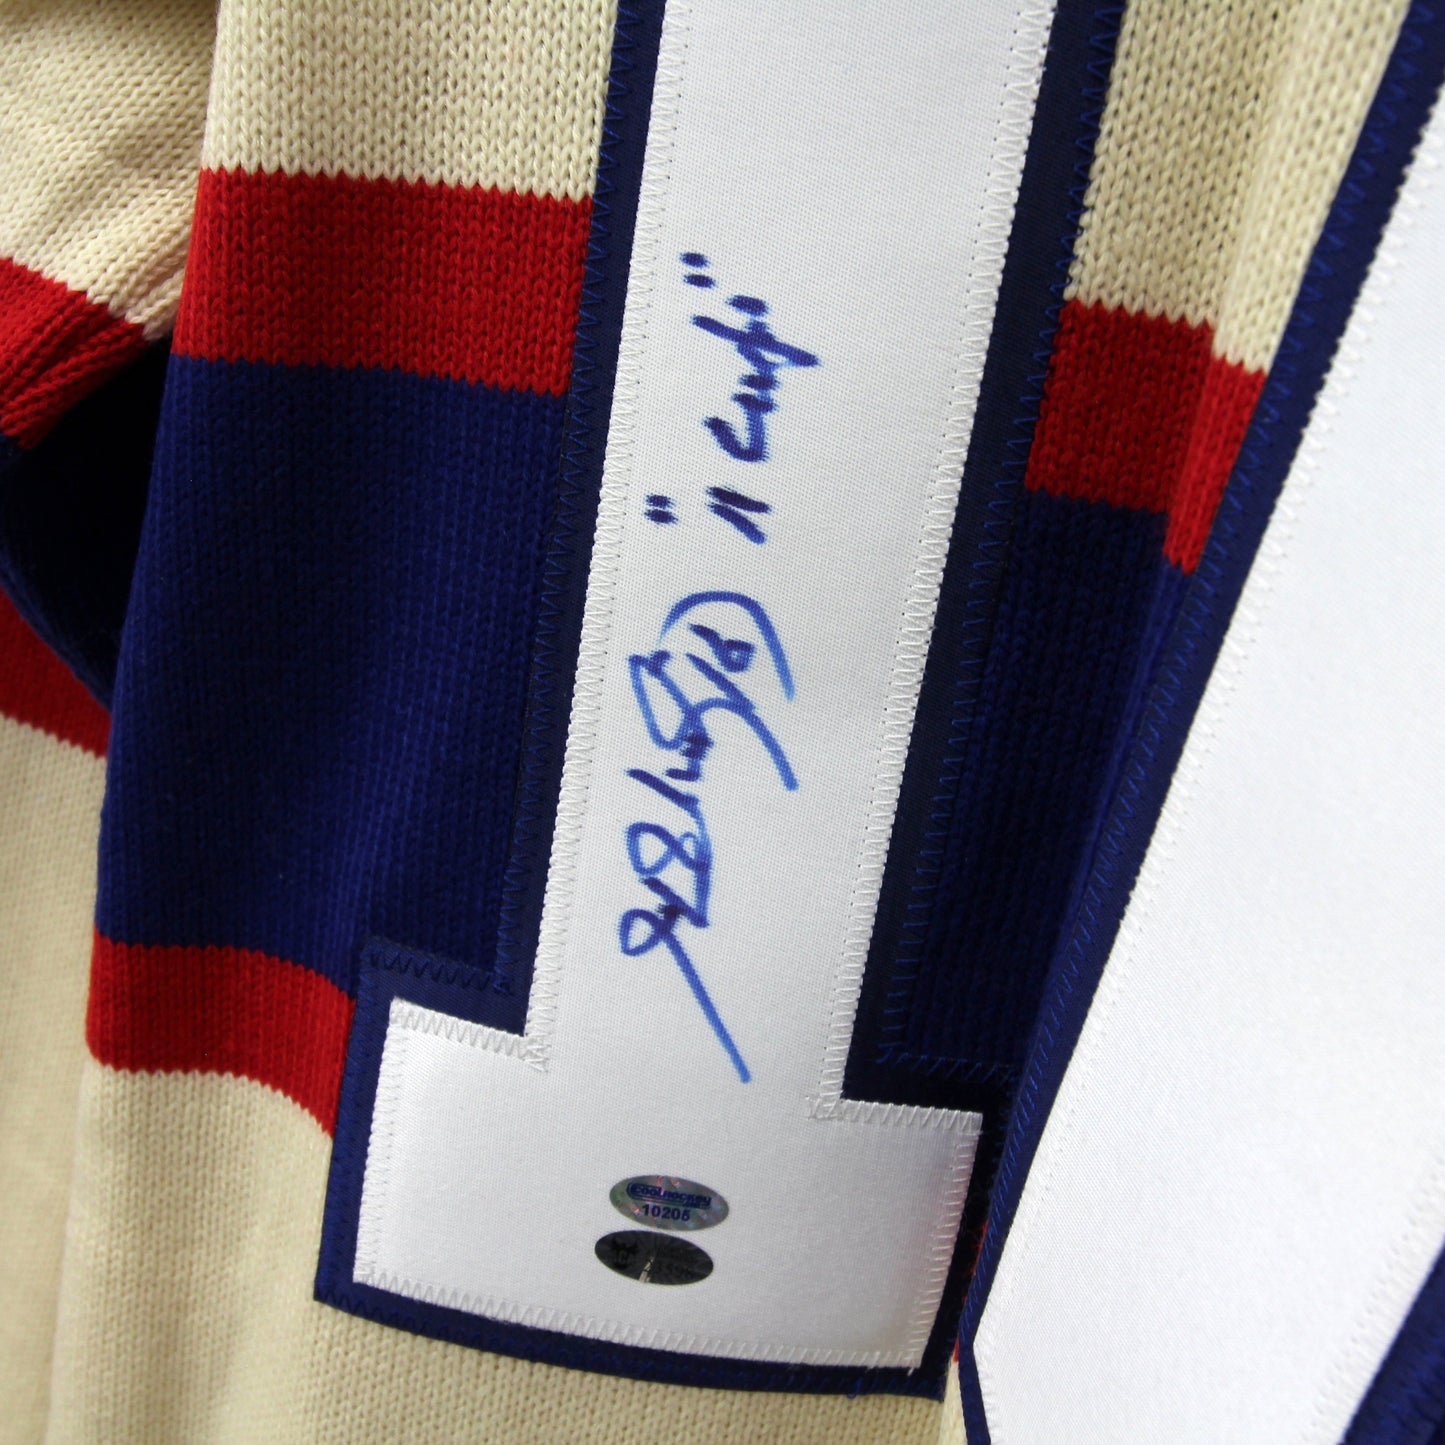 Henri Richard - Canadiens 1945-46 - Autographed Jersey / Chandail autographié